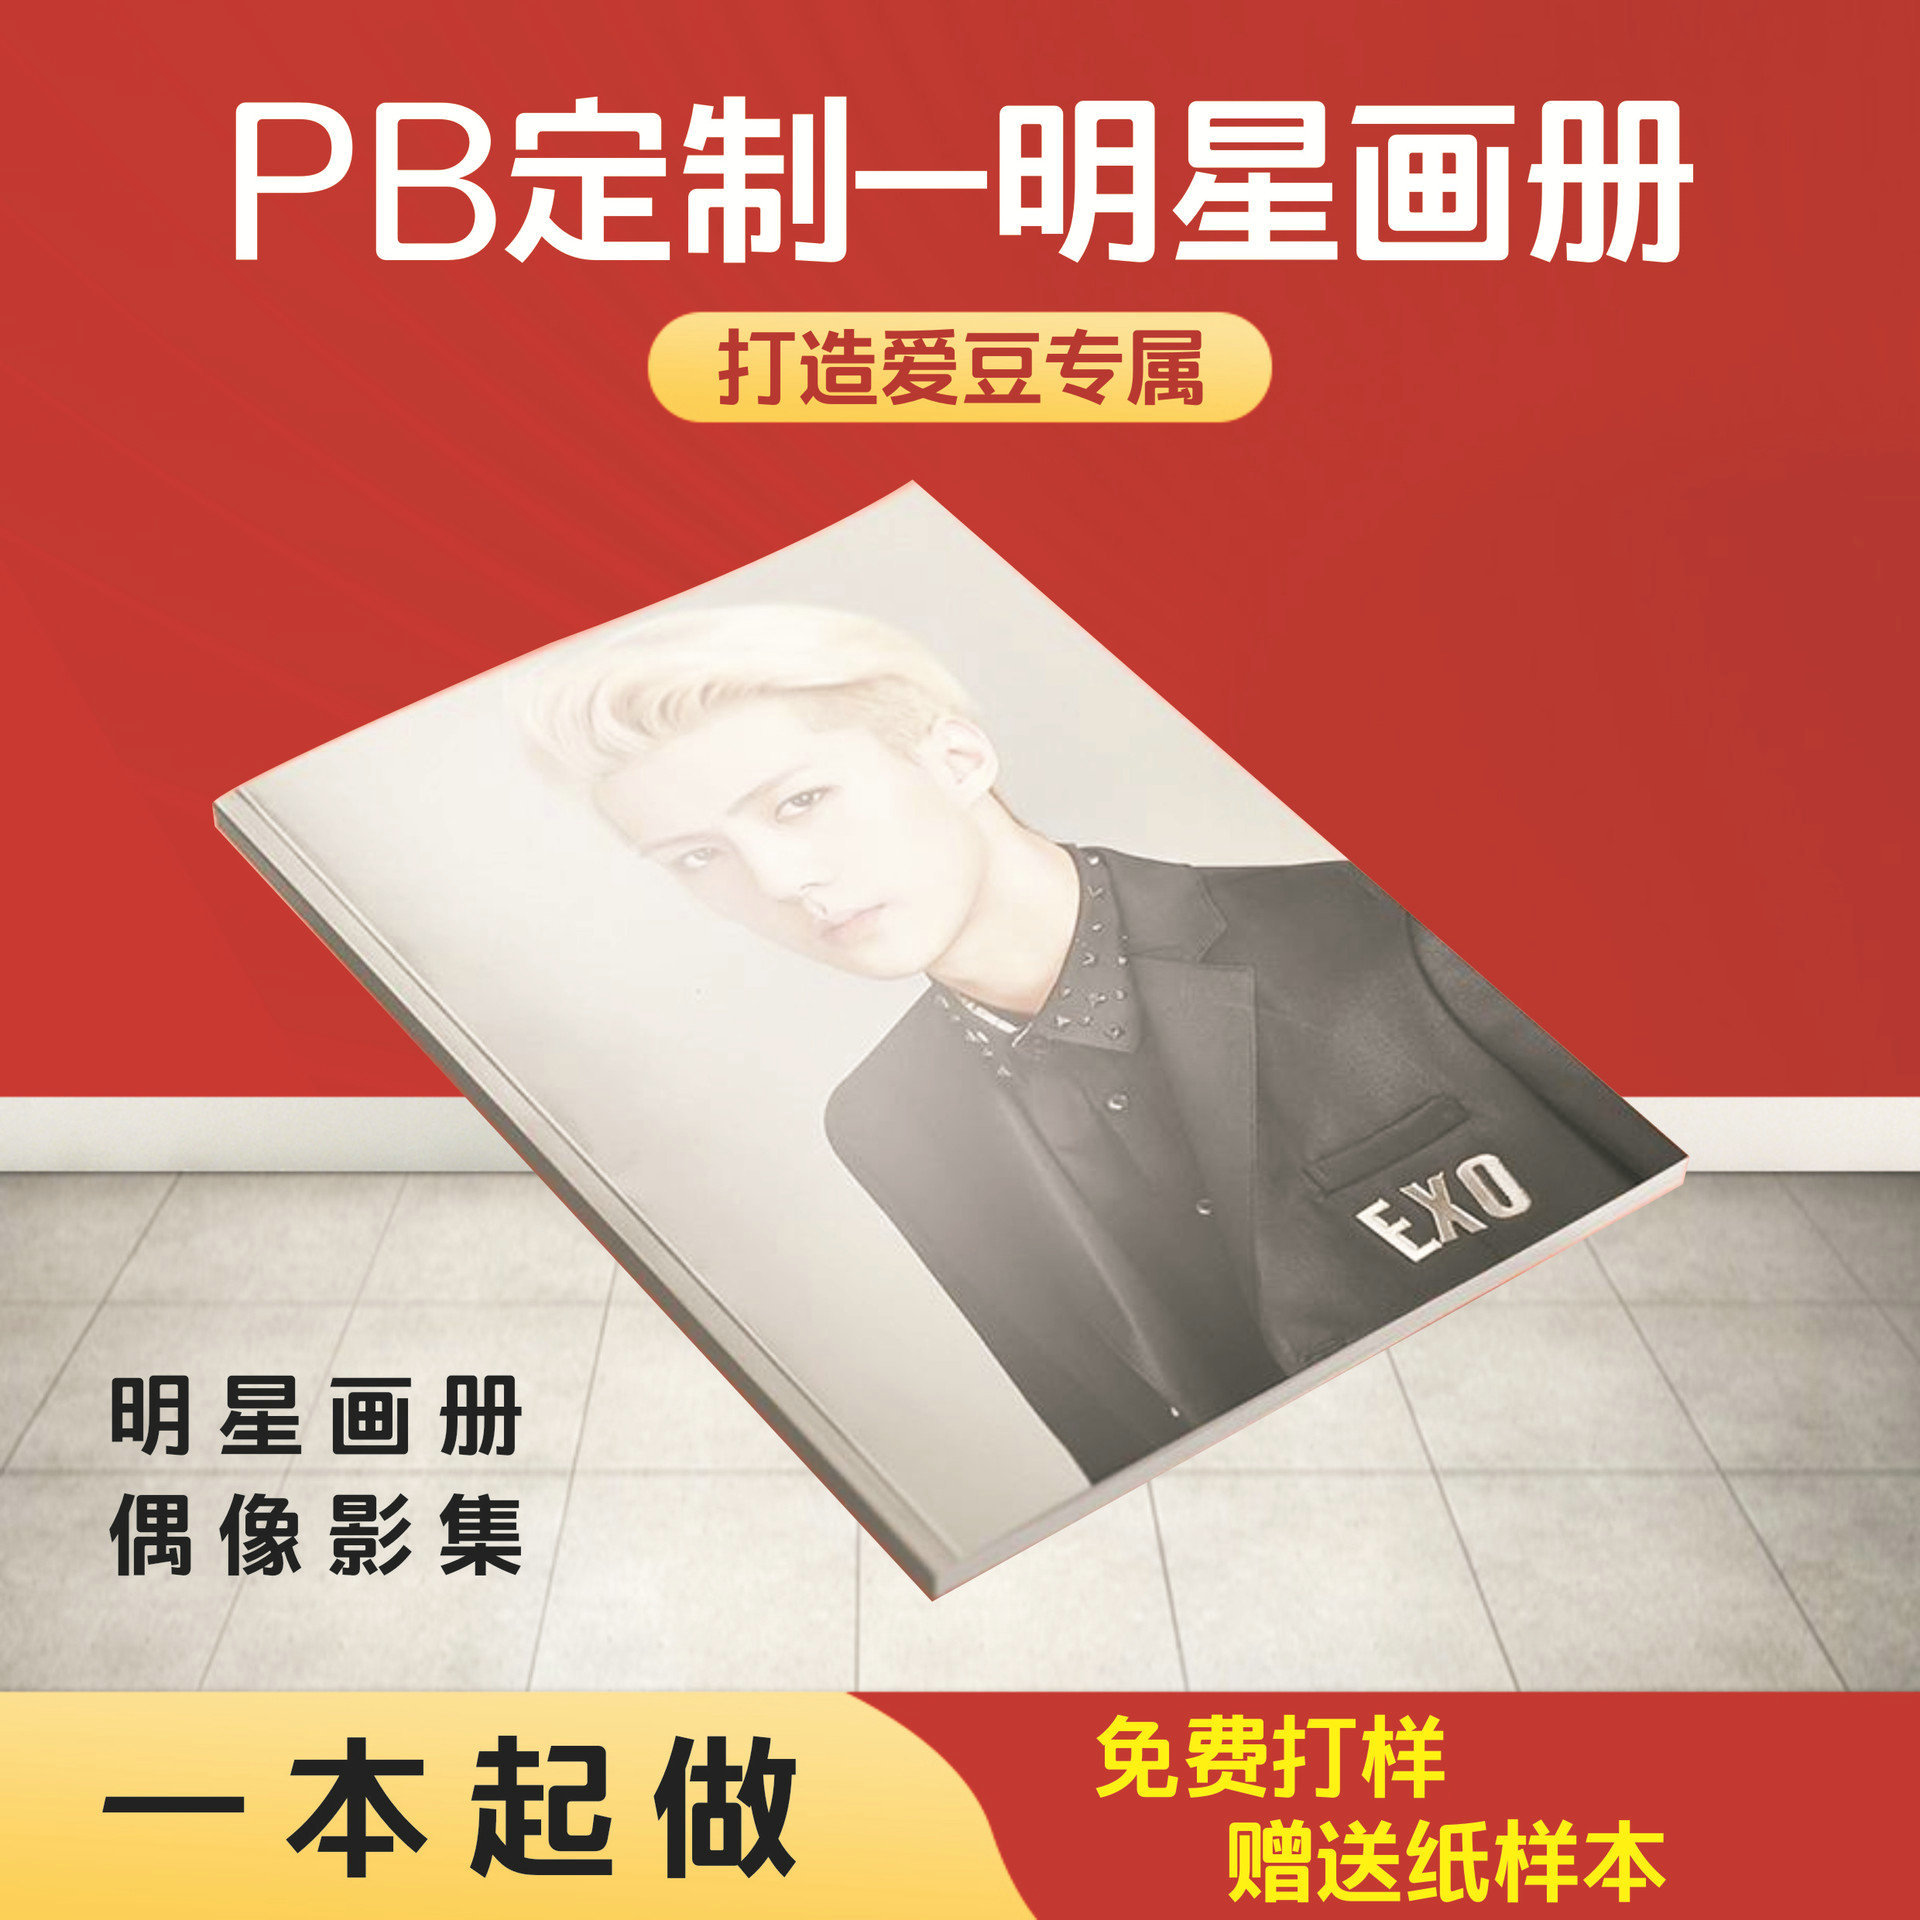 PB定 制明星画册印刷偶像相册纪念册宣传印图片演唱会资料杂志册